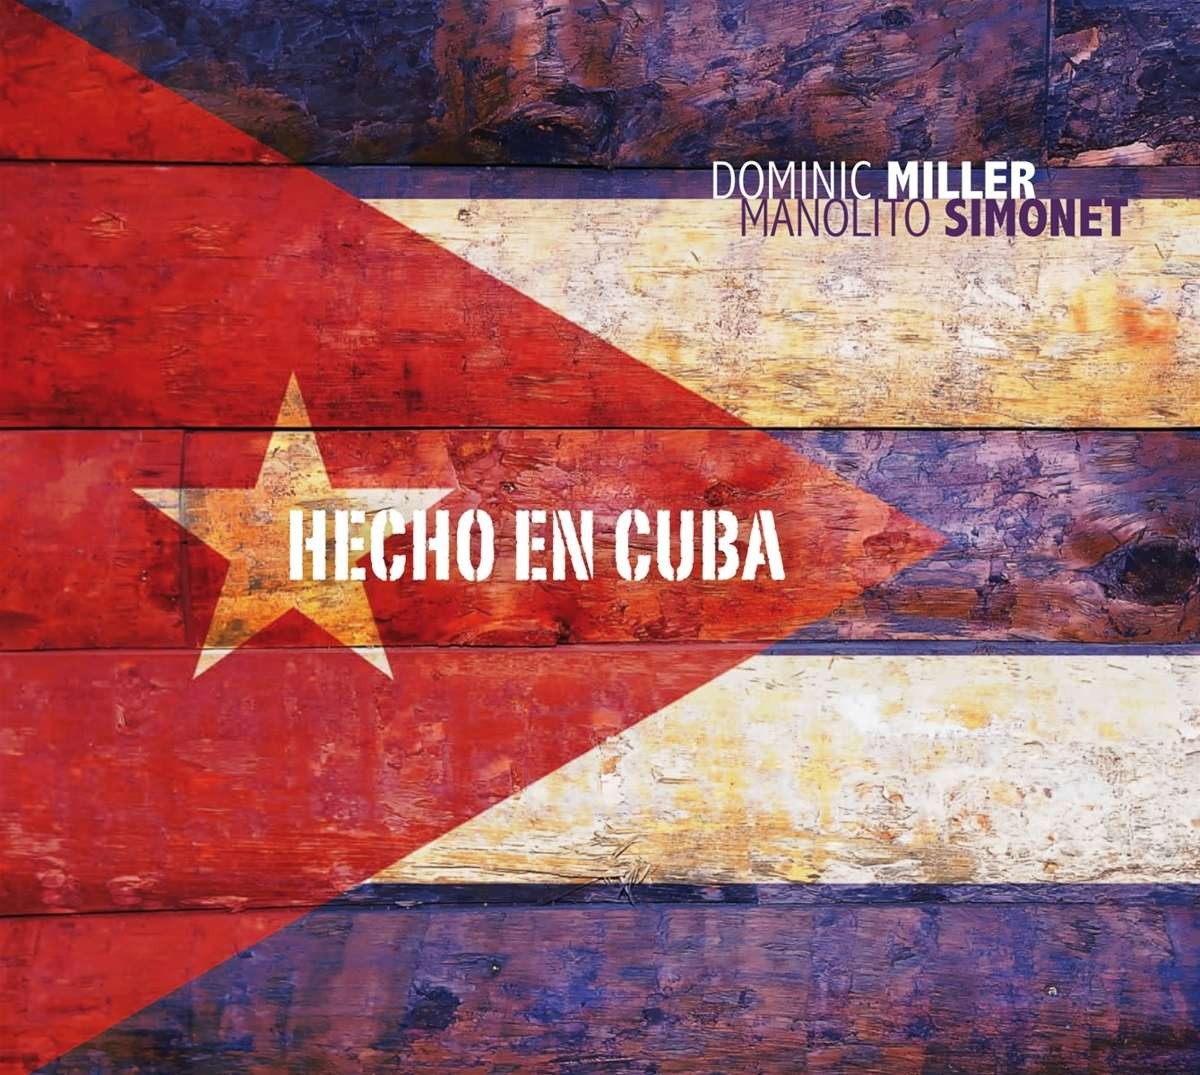 Miller, Dominic / Manolet Simonet : Hecho en Cuba(CD)